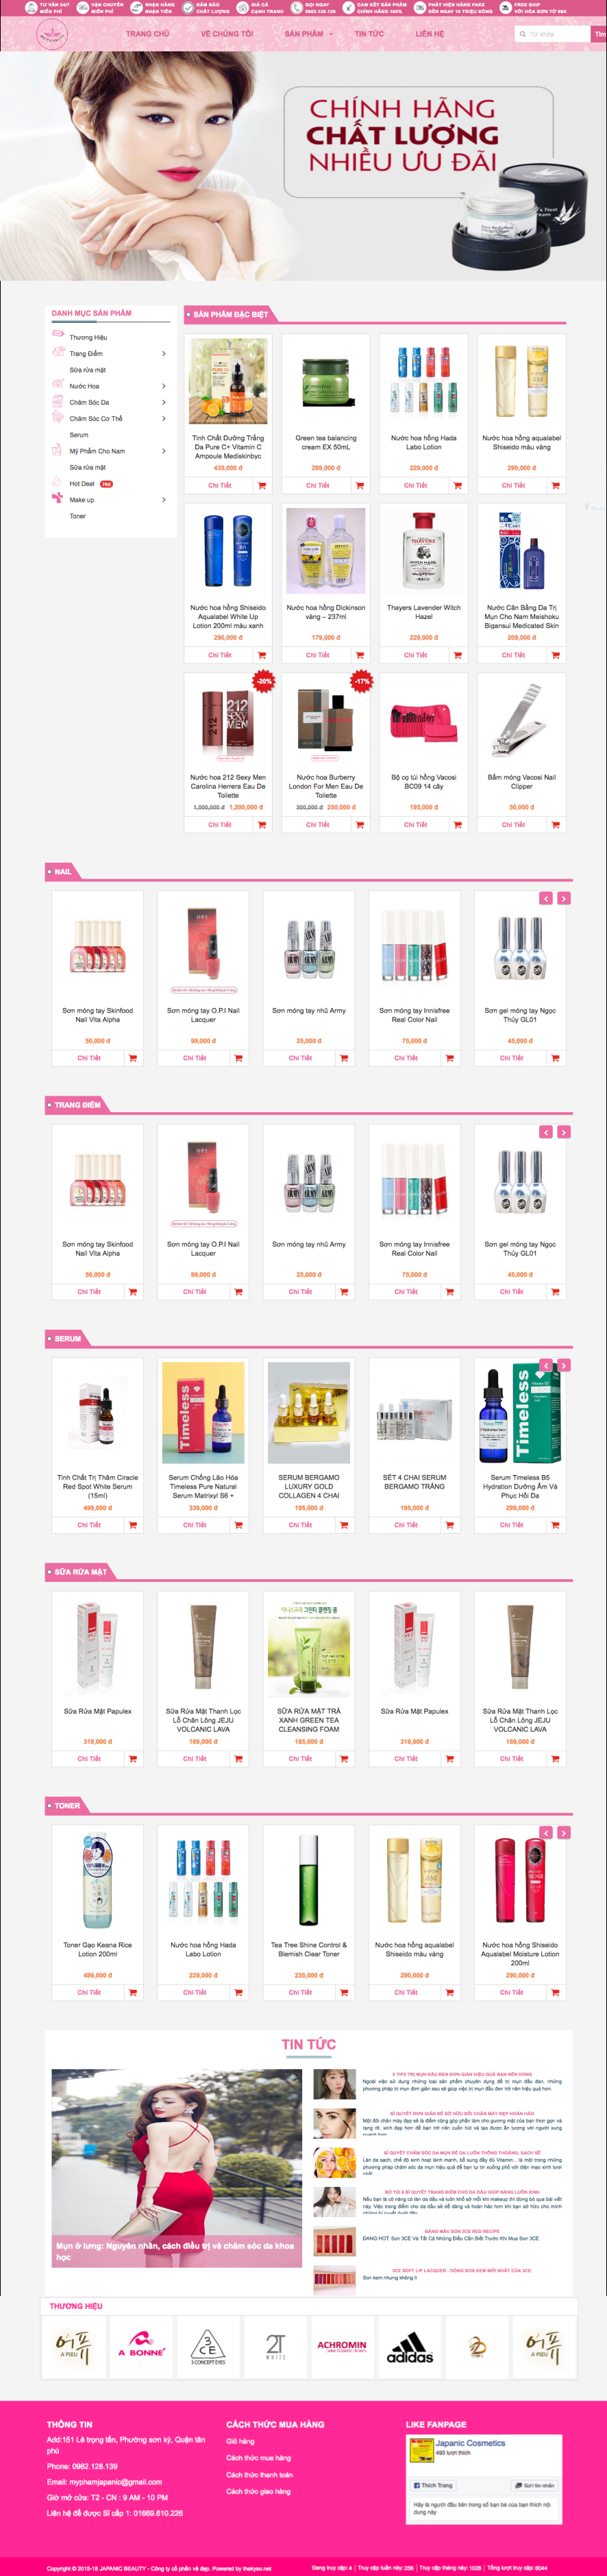 Thiết kế website bán mỹ phẩm